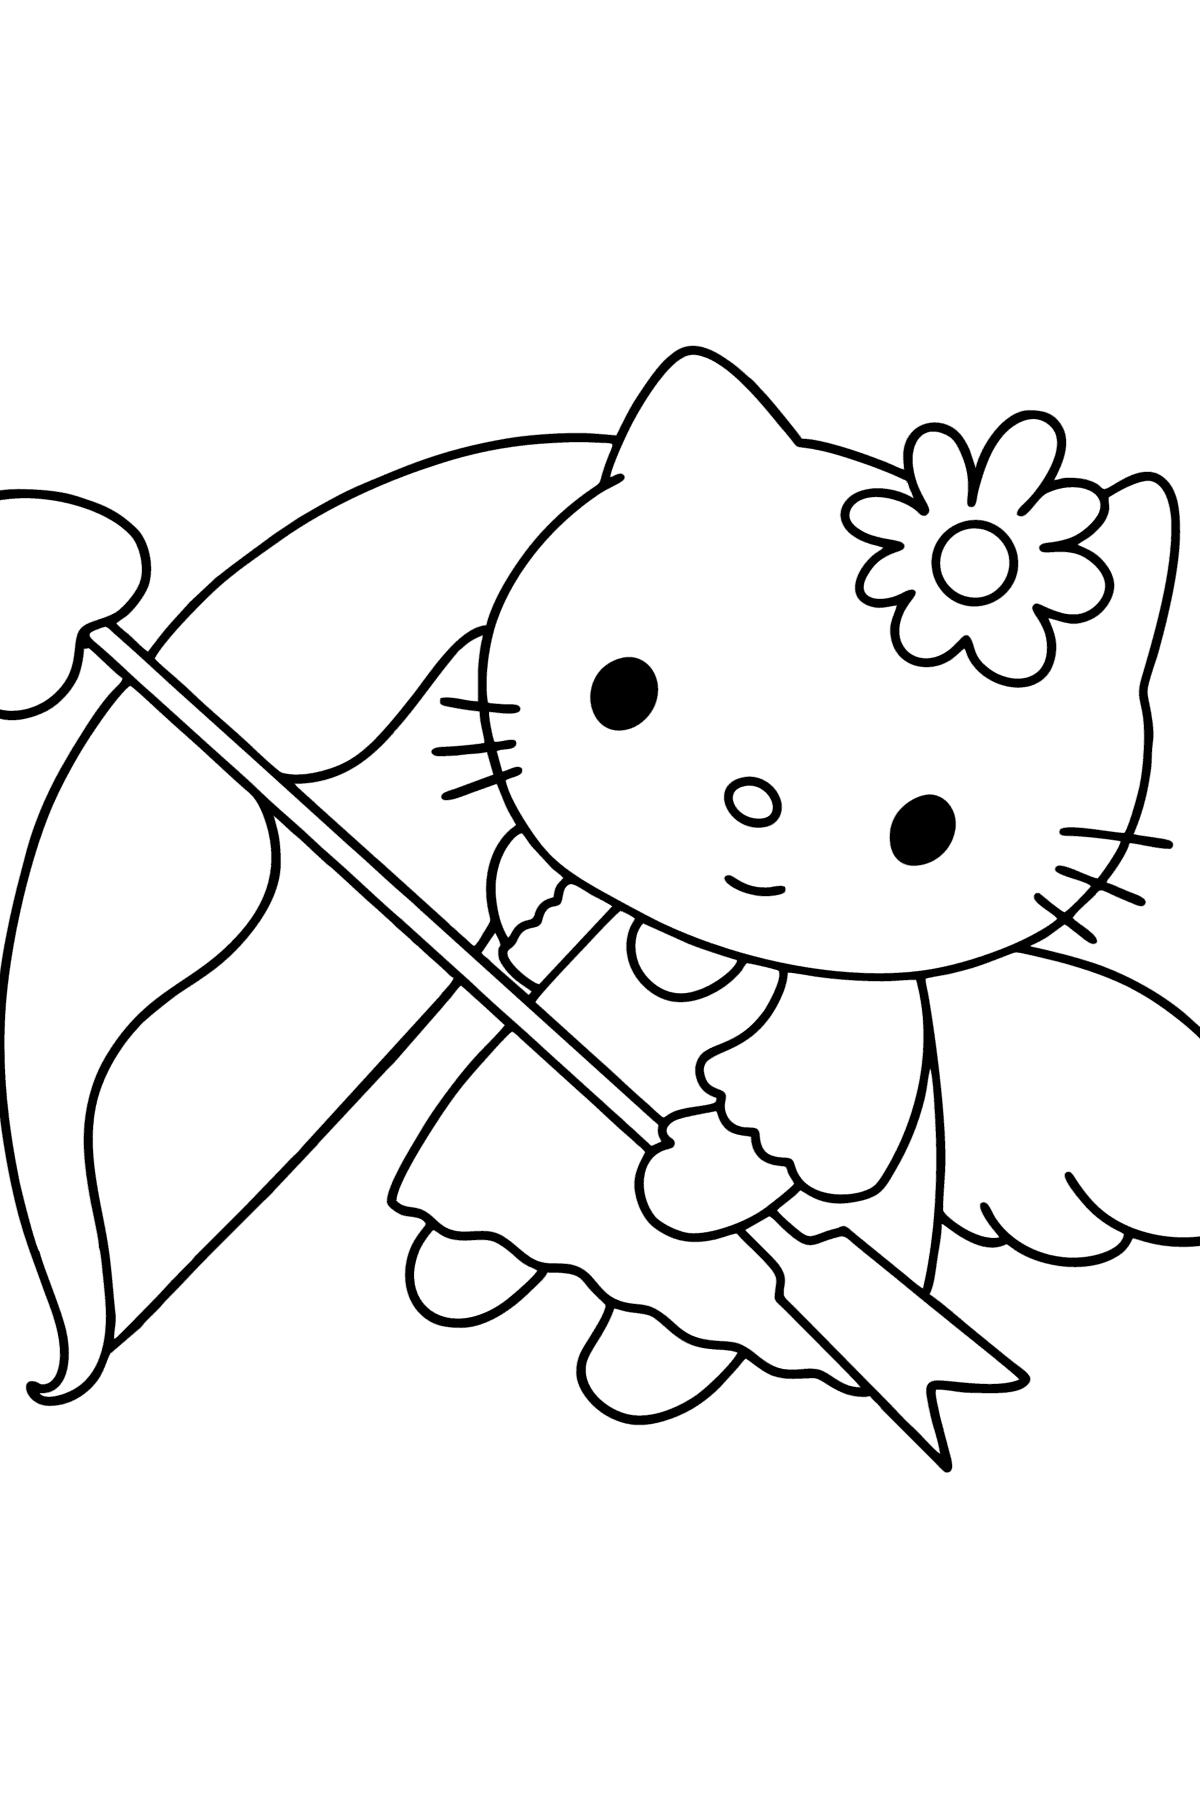 Dibujo para colorear de Hello Kitty en el día de San Valentín - Dibujos para Colorear para Niños